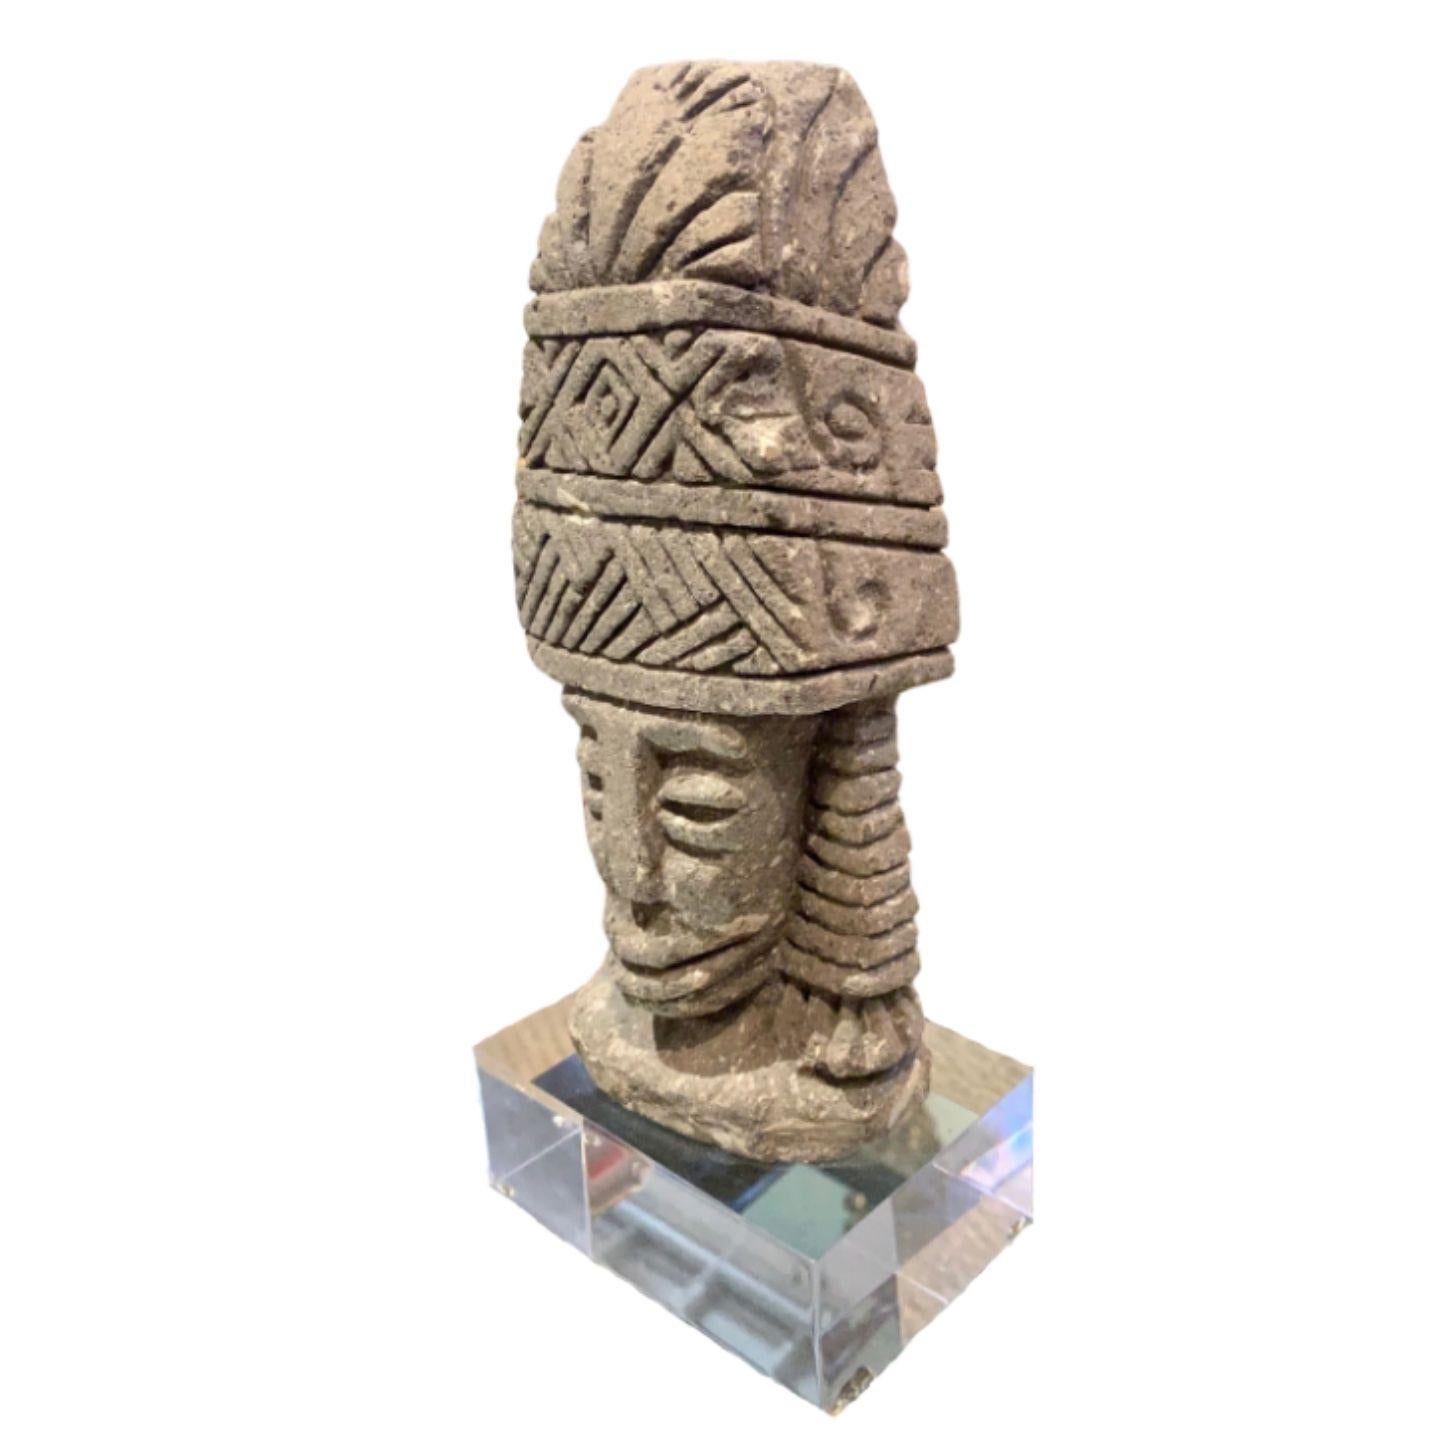 1960's Canteru medium Aztec God on an acrylic base.